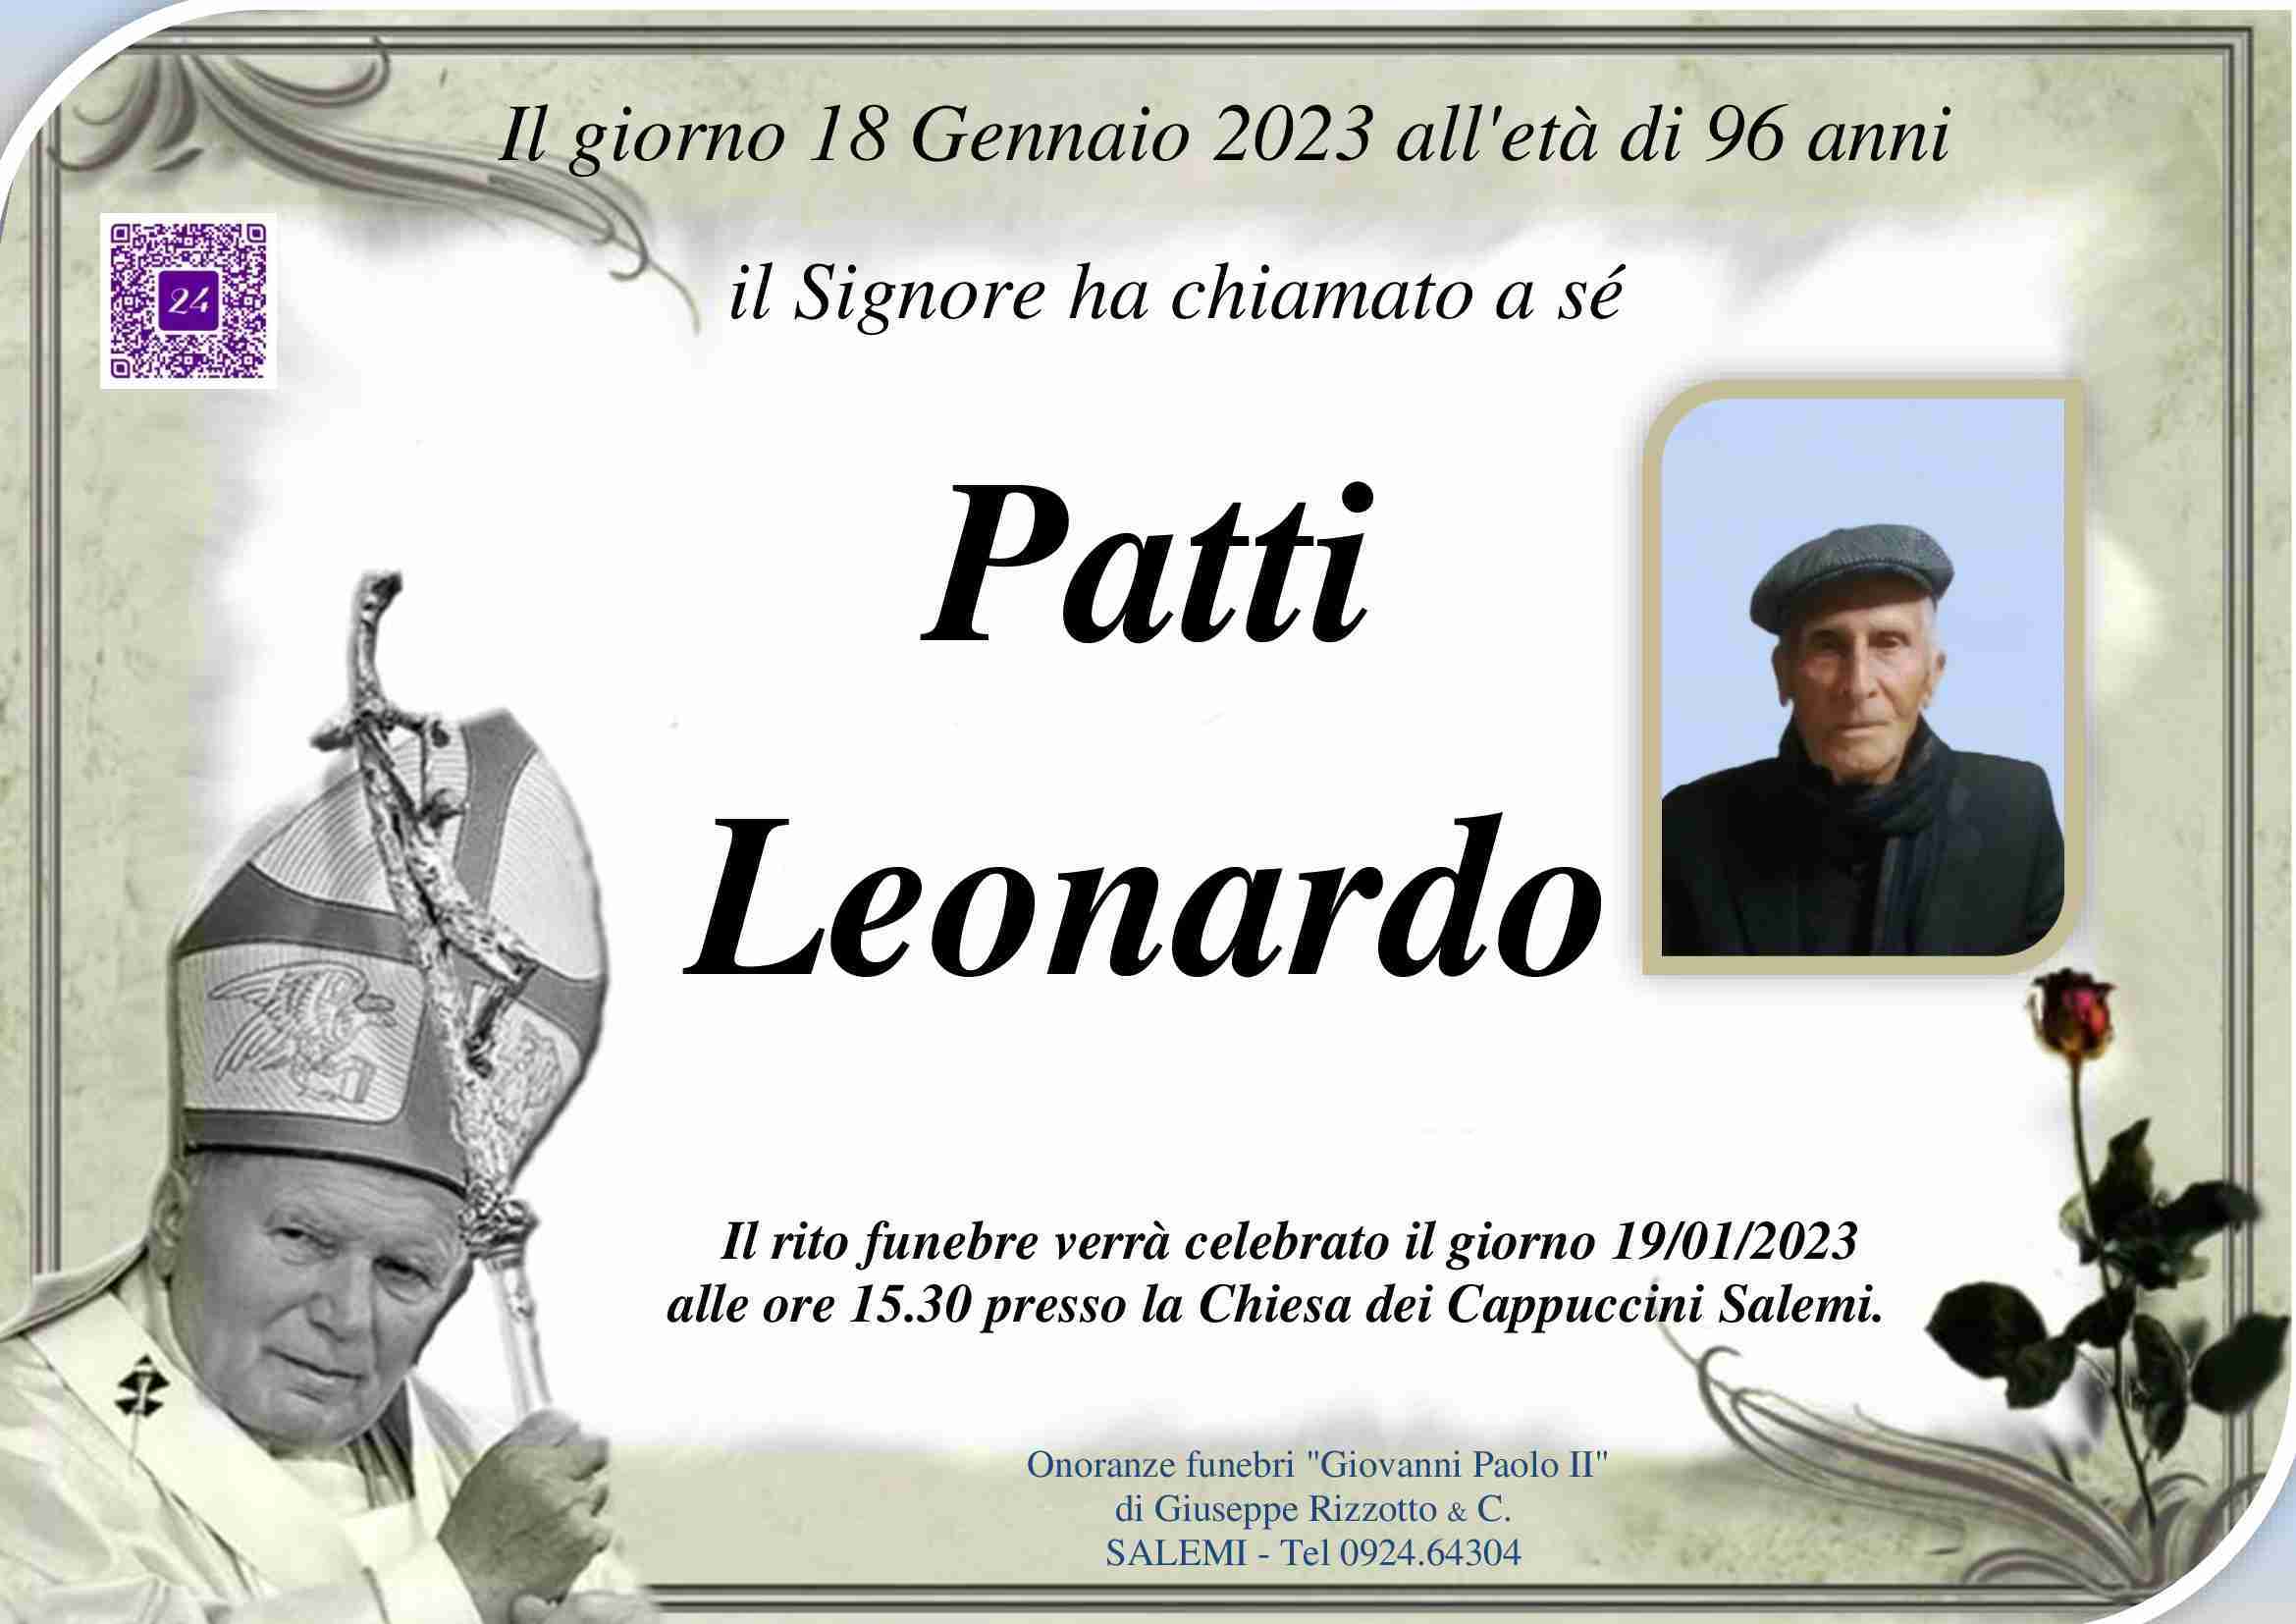 Leonardo Patti